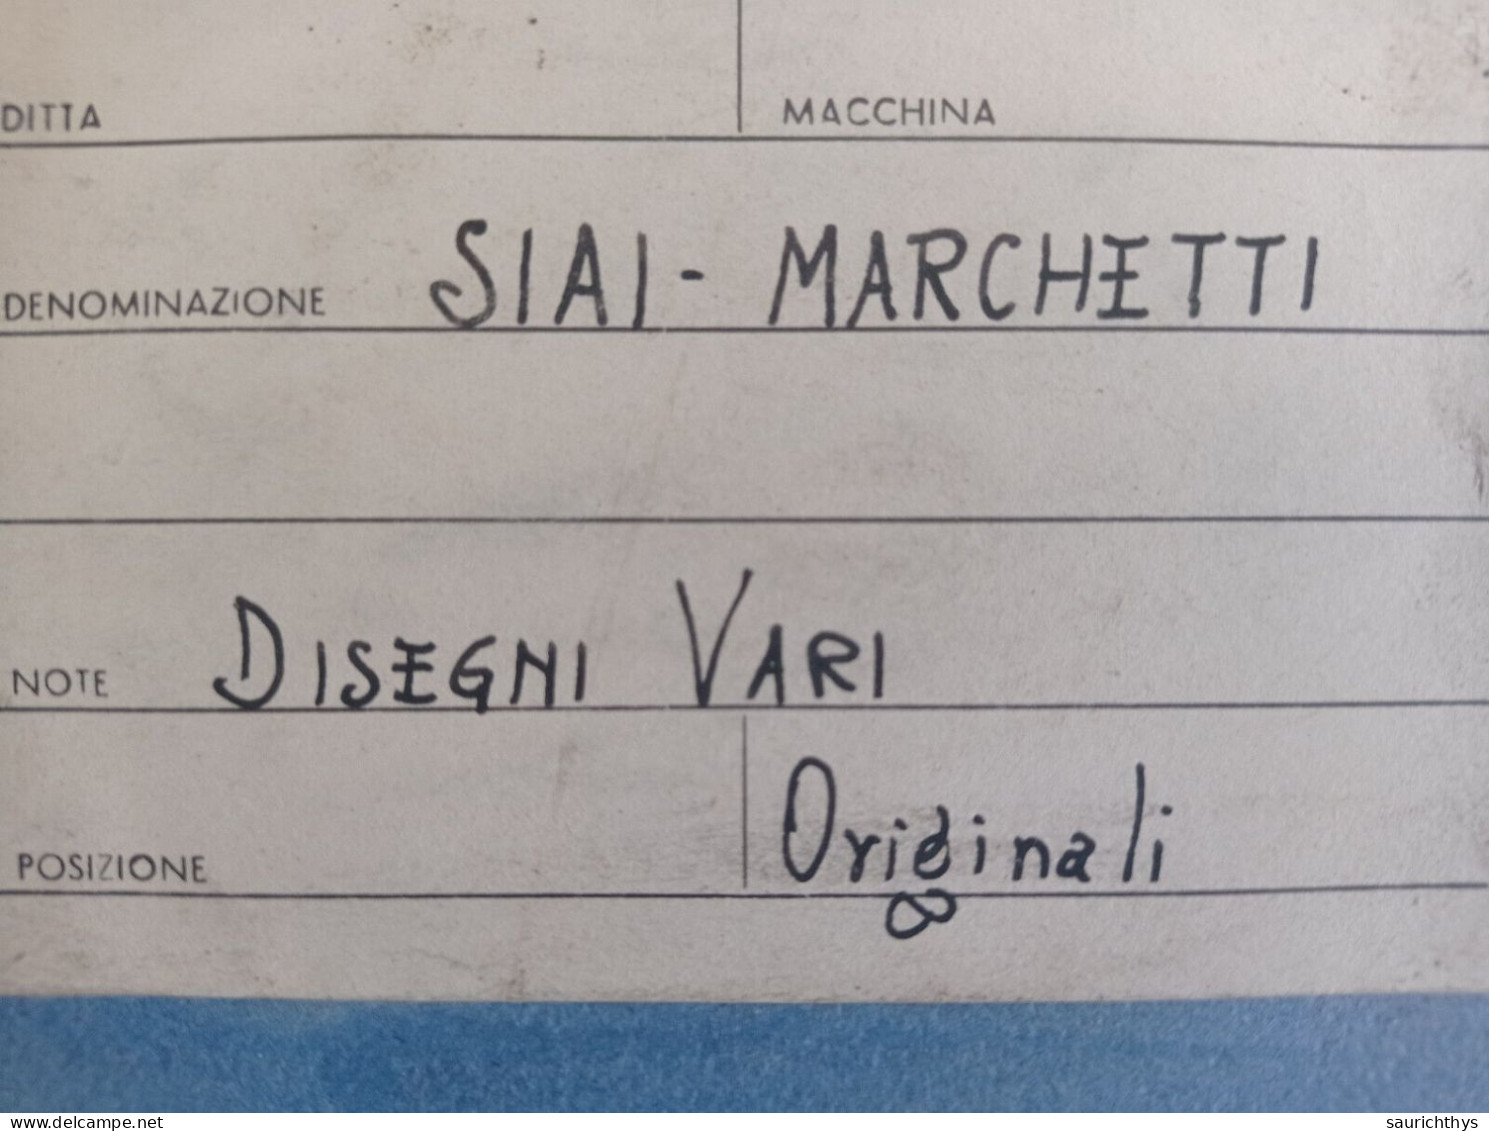 Cartella Documenti SIAI Savoia Marchetti Disegni Tecnici In Schizzi Originali E Copie Conformi D'epoca Aeronautica - Maschinen